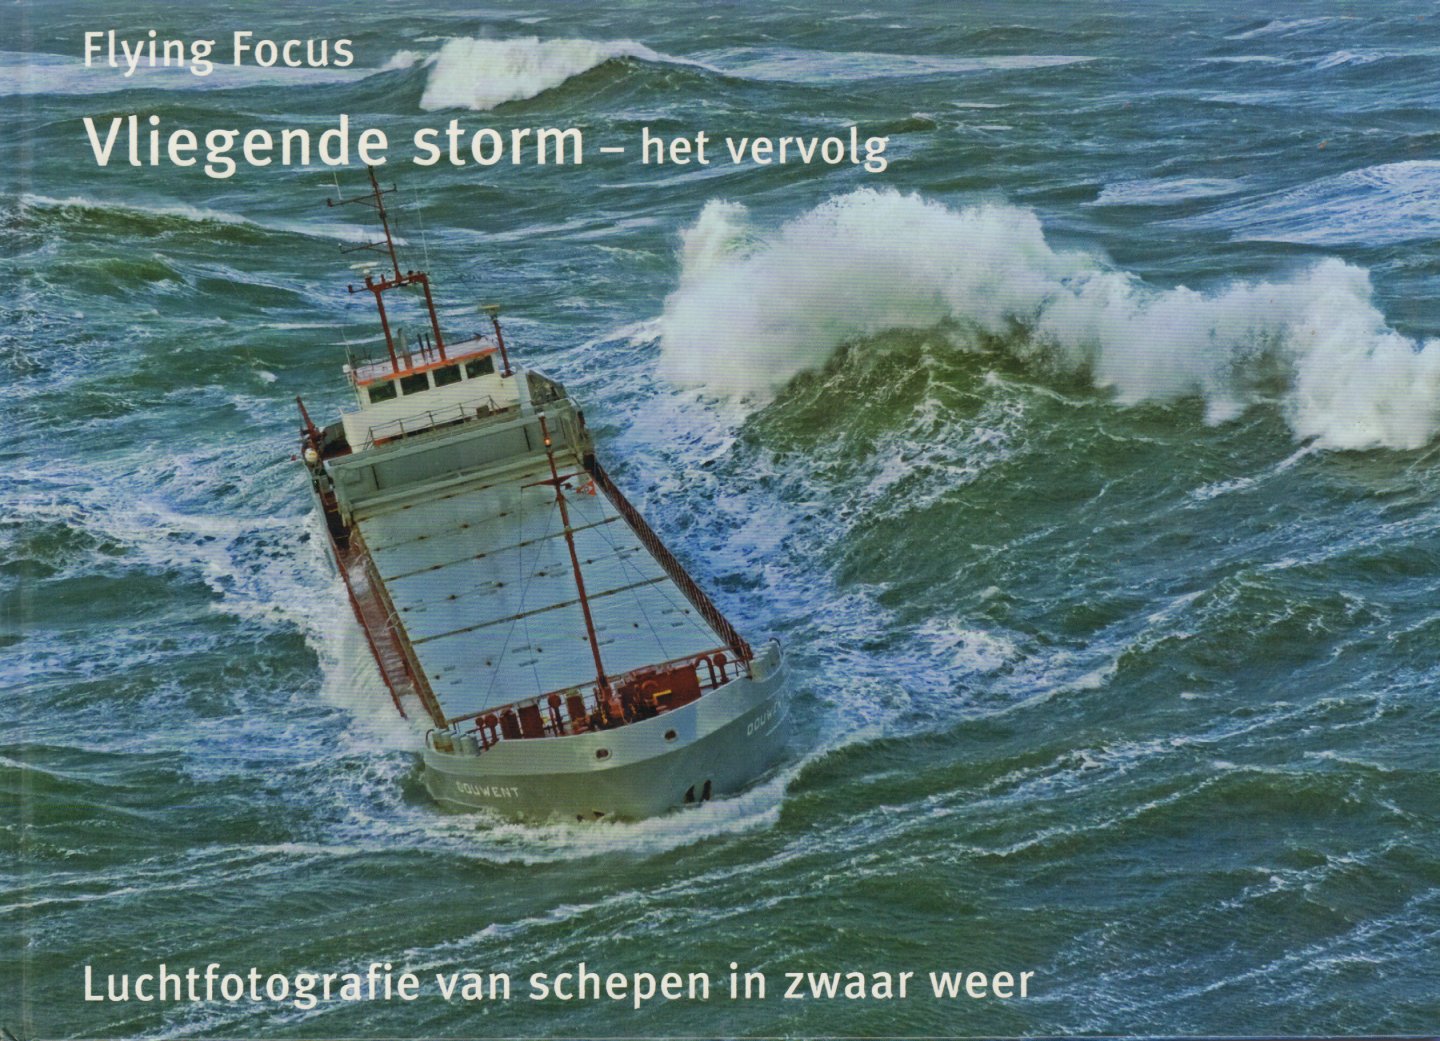 IJsseling, Herman - Vliegende Storm - Het Vervolg (Luchtfotografie van schepen in zwaar weer), 95 pag. hardcover, zeer goede staat (wel opdracht geschreven op schutbladen)